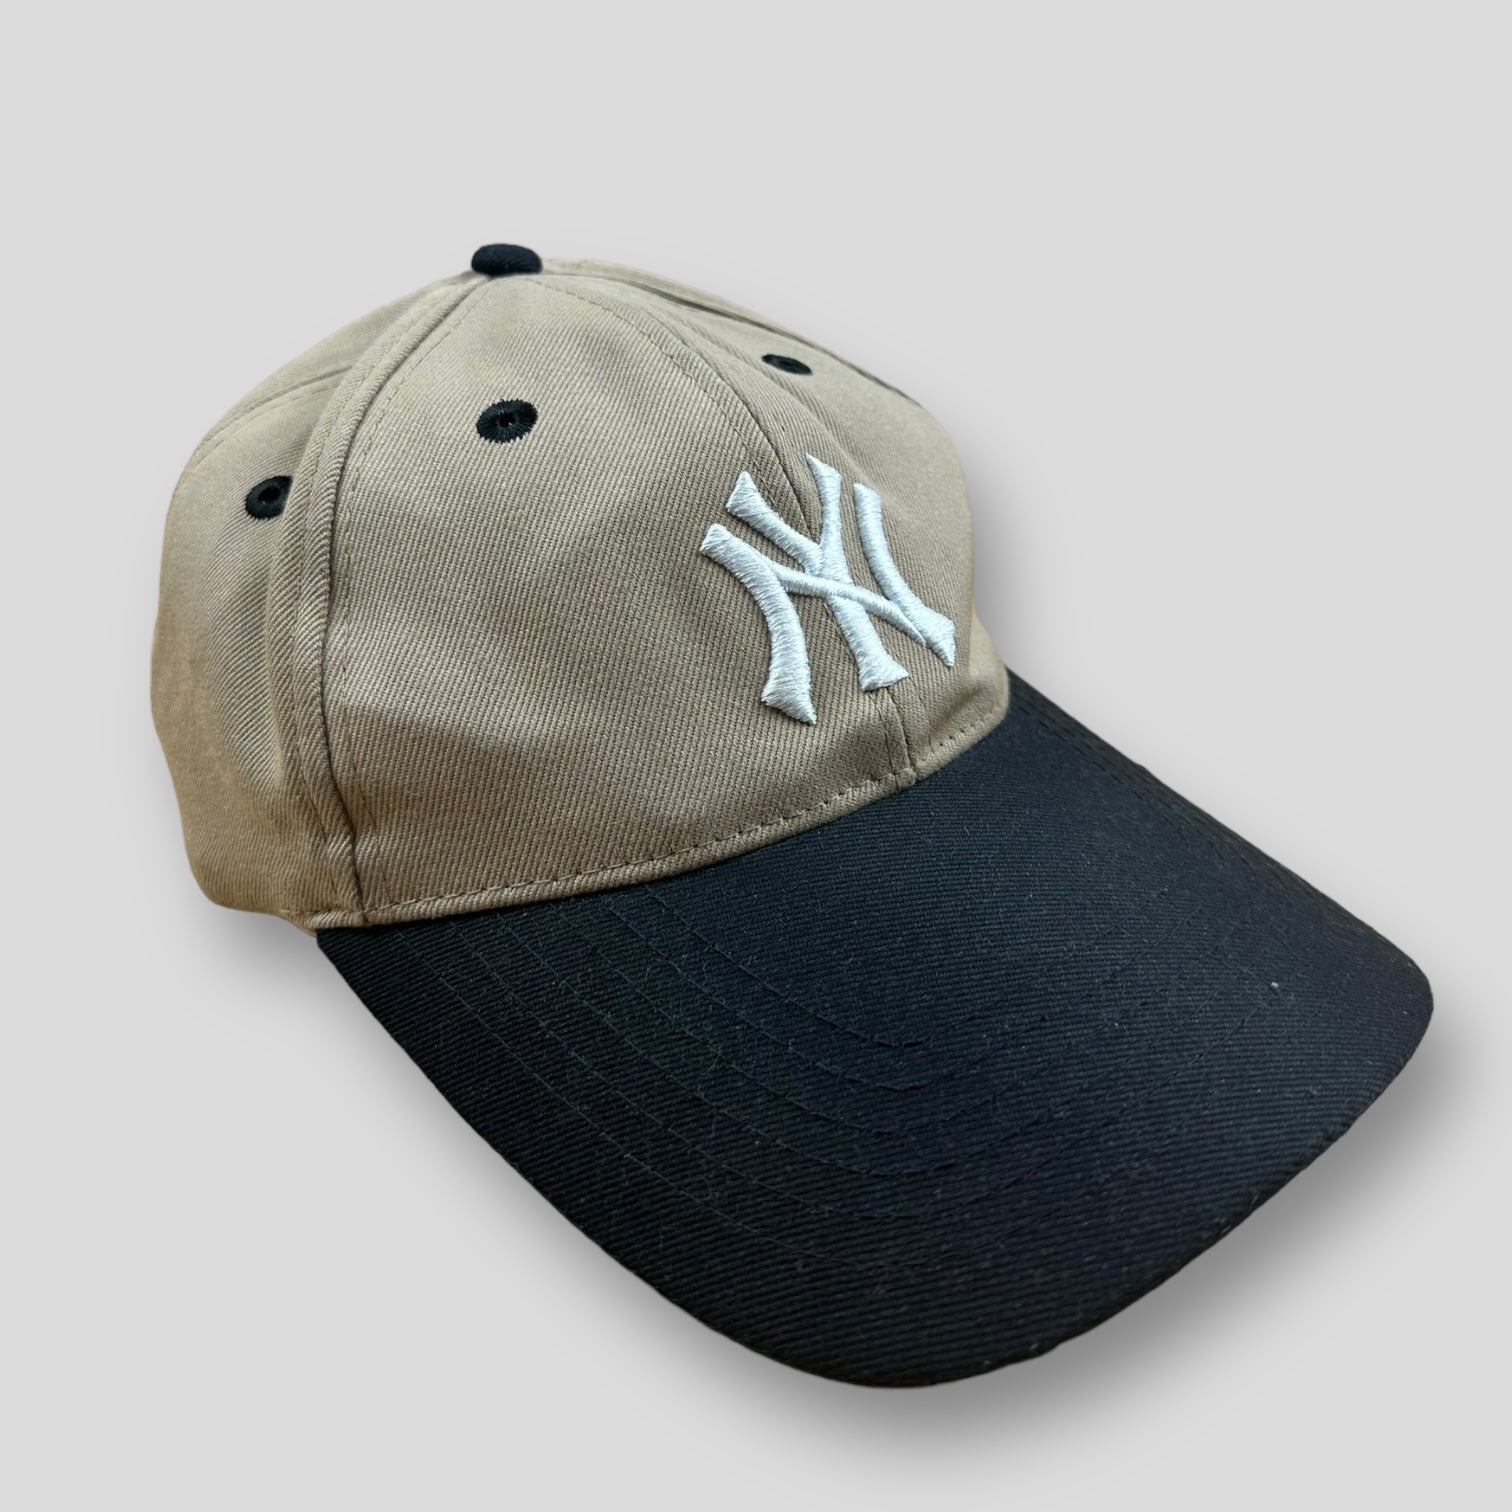 NY Yankee cap